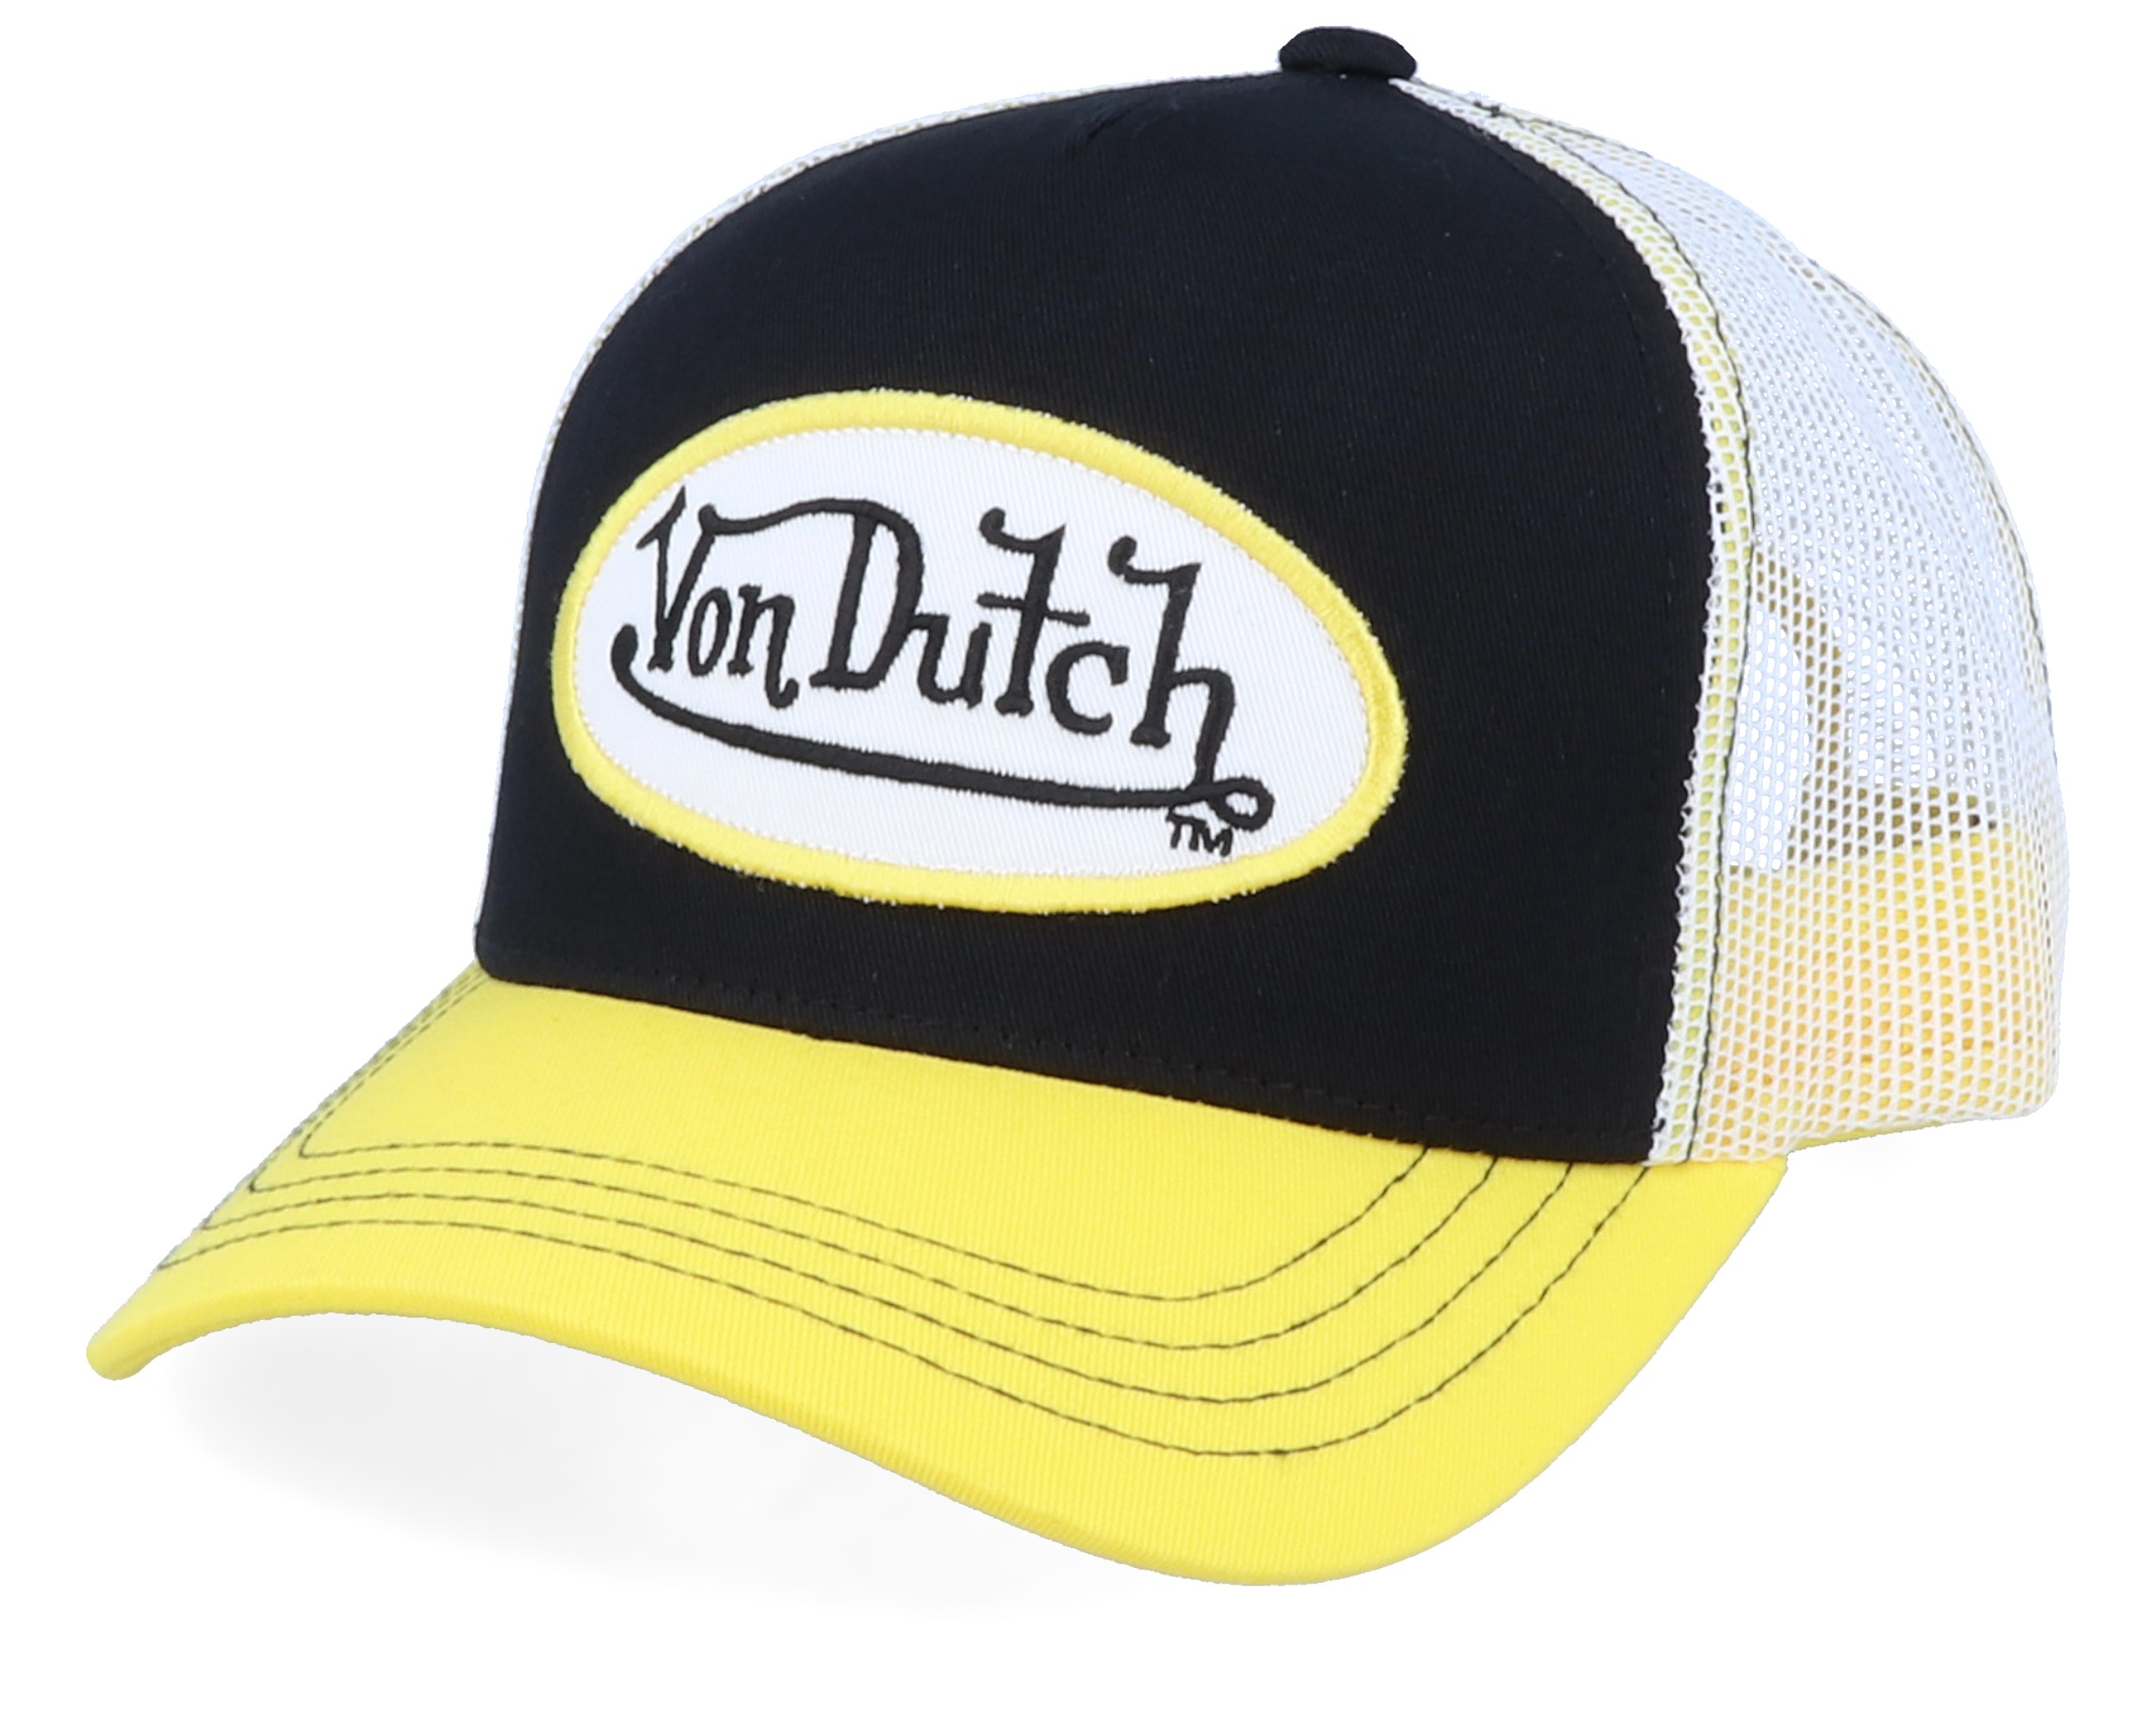 Forsvinde del skille sig ud Oval Patch Black/White/Yellow Trucker - Von Dutch kasket | Hatstore.dk